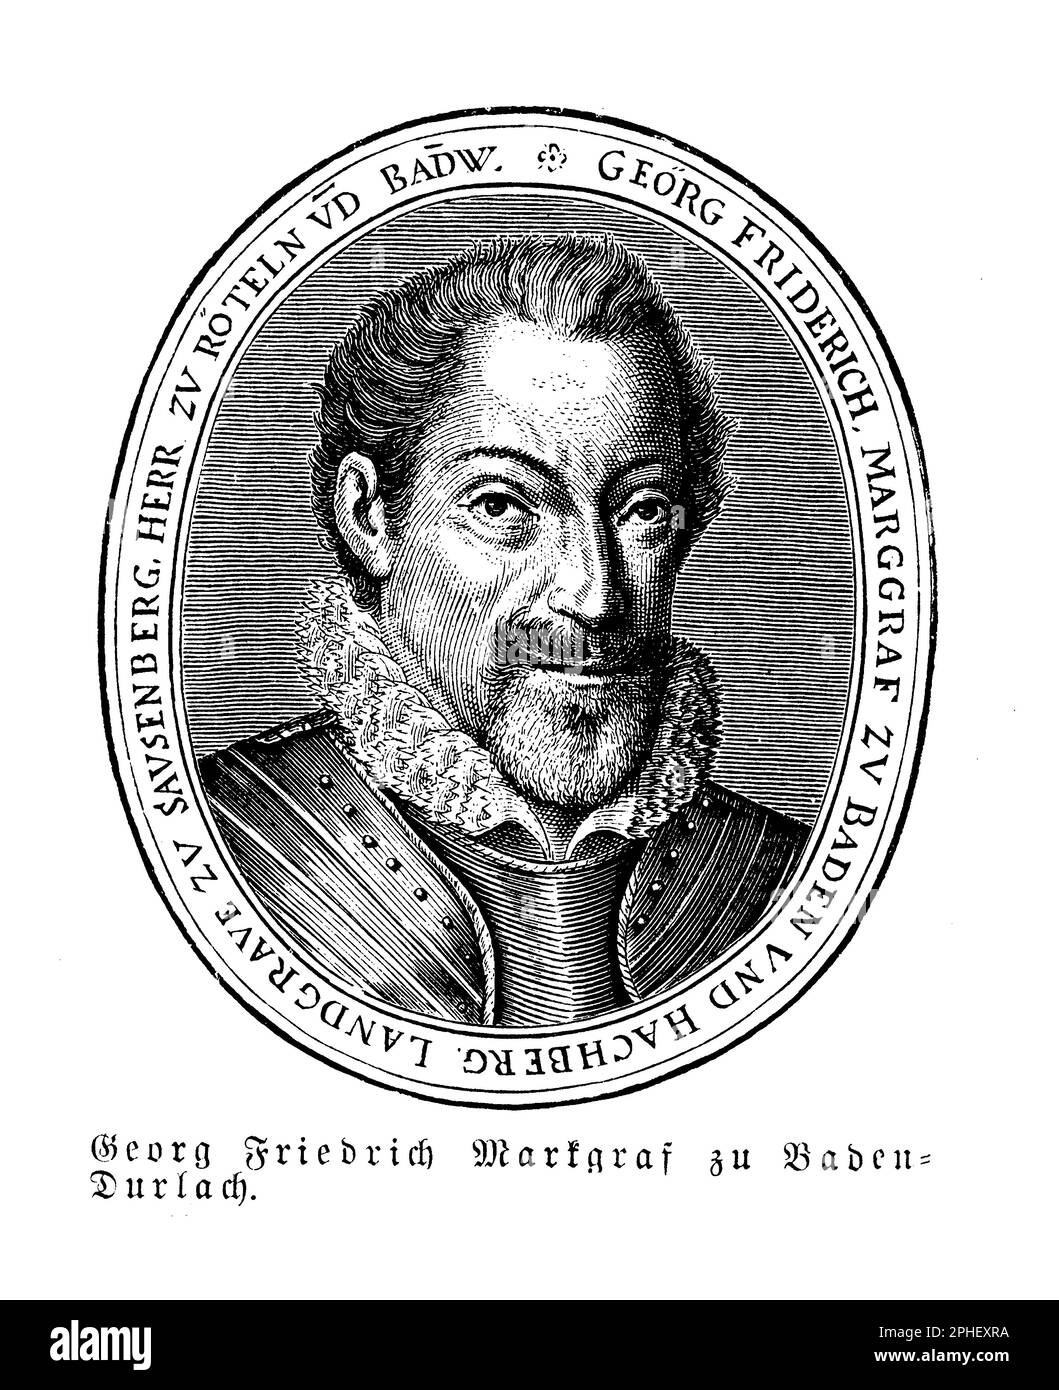 Georg Friedrich (1573-1638) était la Margrave de Baden-Durlach, un territoire du sud-ouest de l'Allemagne. Il a été un chef protestant clé pendant la guerre de trente ans et a joué un rôle important dans la défense de la cause protestante dans la région. Georg Friedrich était également un mécène des arts et des sciences et sa cour de Karlsruhe devint un centre d'apprentissage humaniste et de culture baroque. Il était connu pour sa diplomatie et ses négociations habiles, qui l'ont aidé à maintenir un niveau d'autonomie pour Baden-Durlach pendant la guerre Banque D'Images